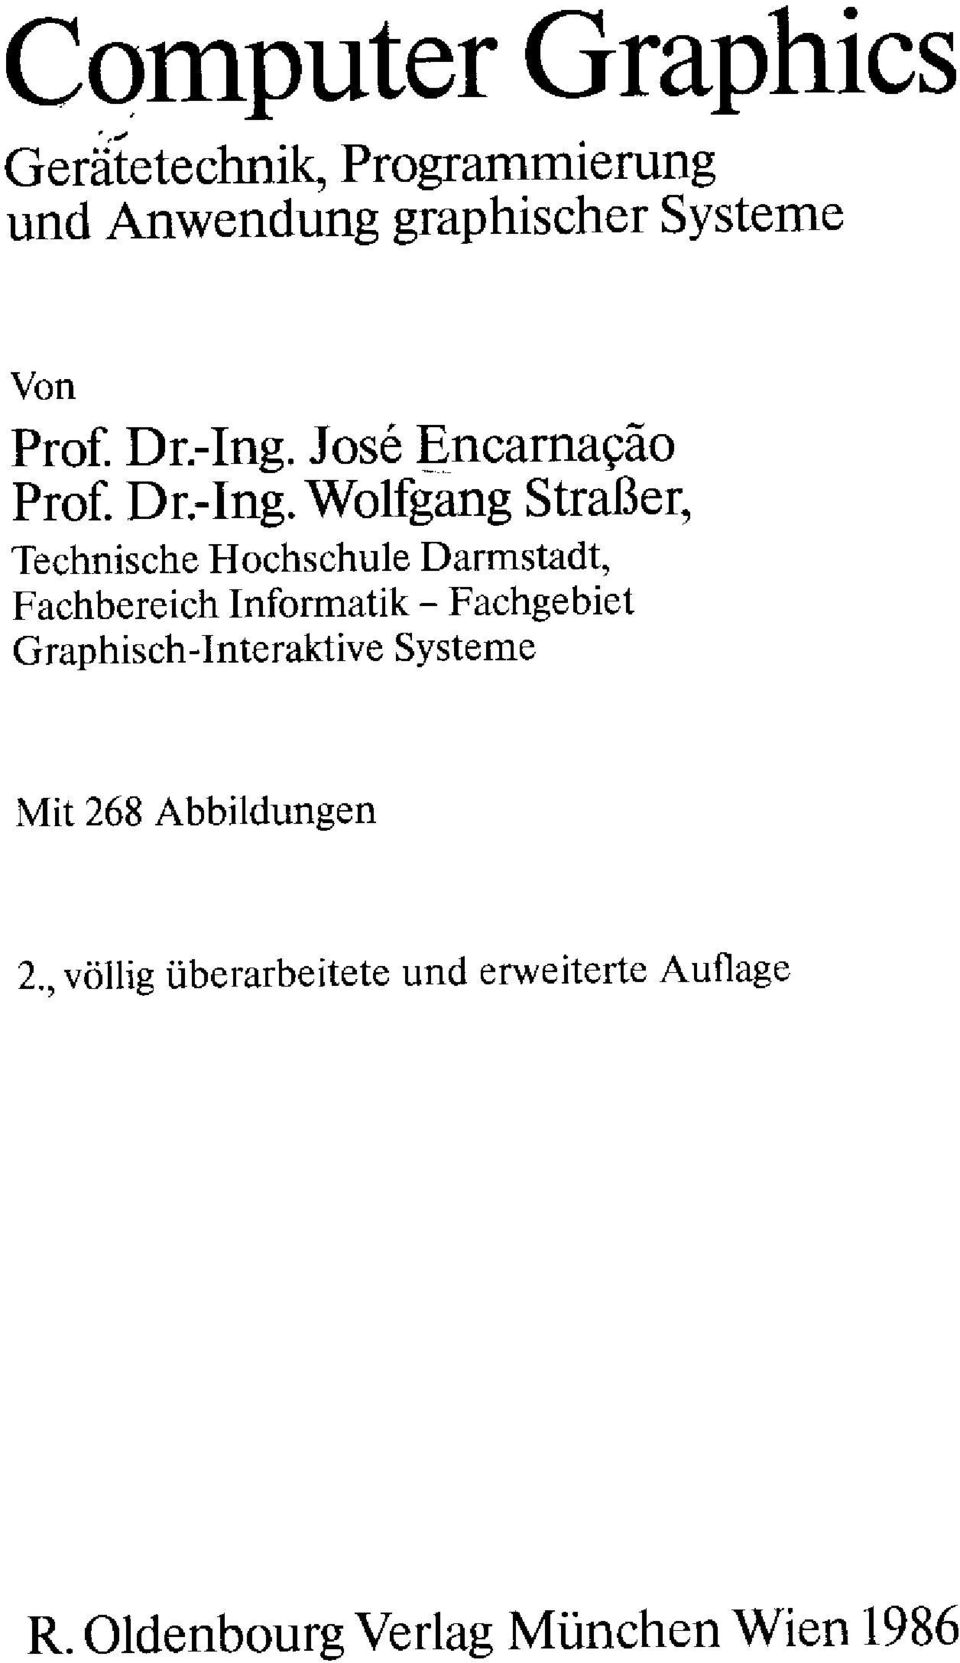 Jose Encarnacäo  Wolfgang Straßer, Technische Hochschule Darmstadt, Fachbereich